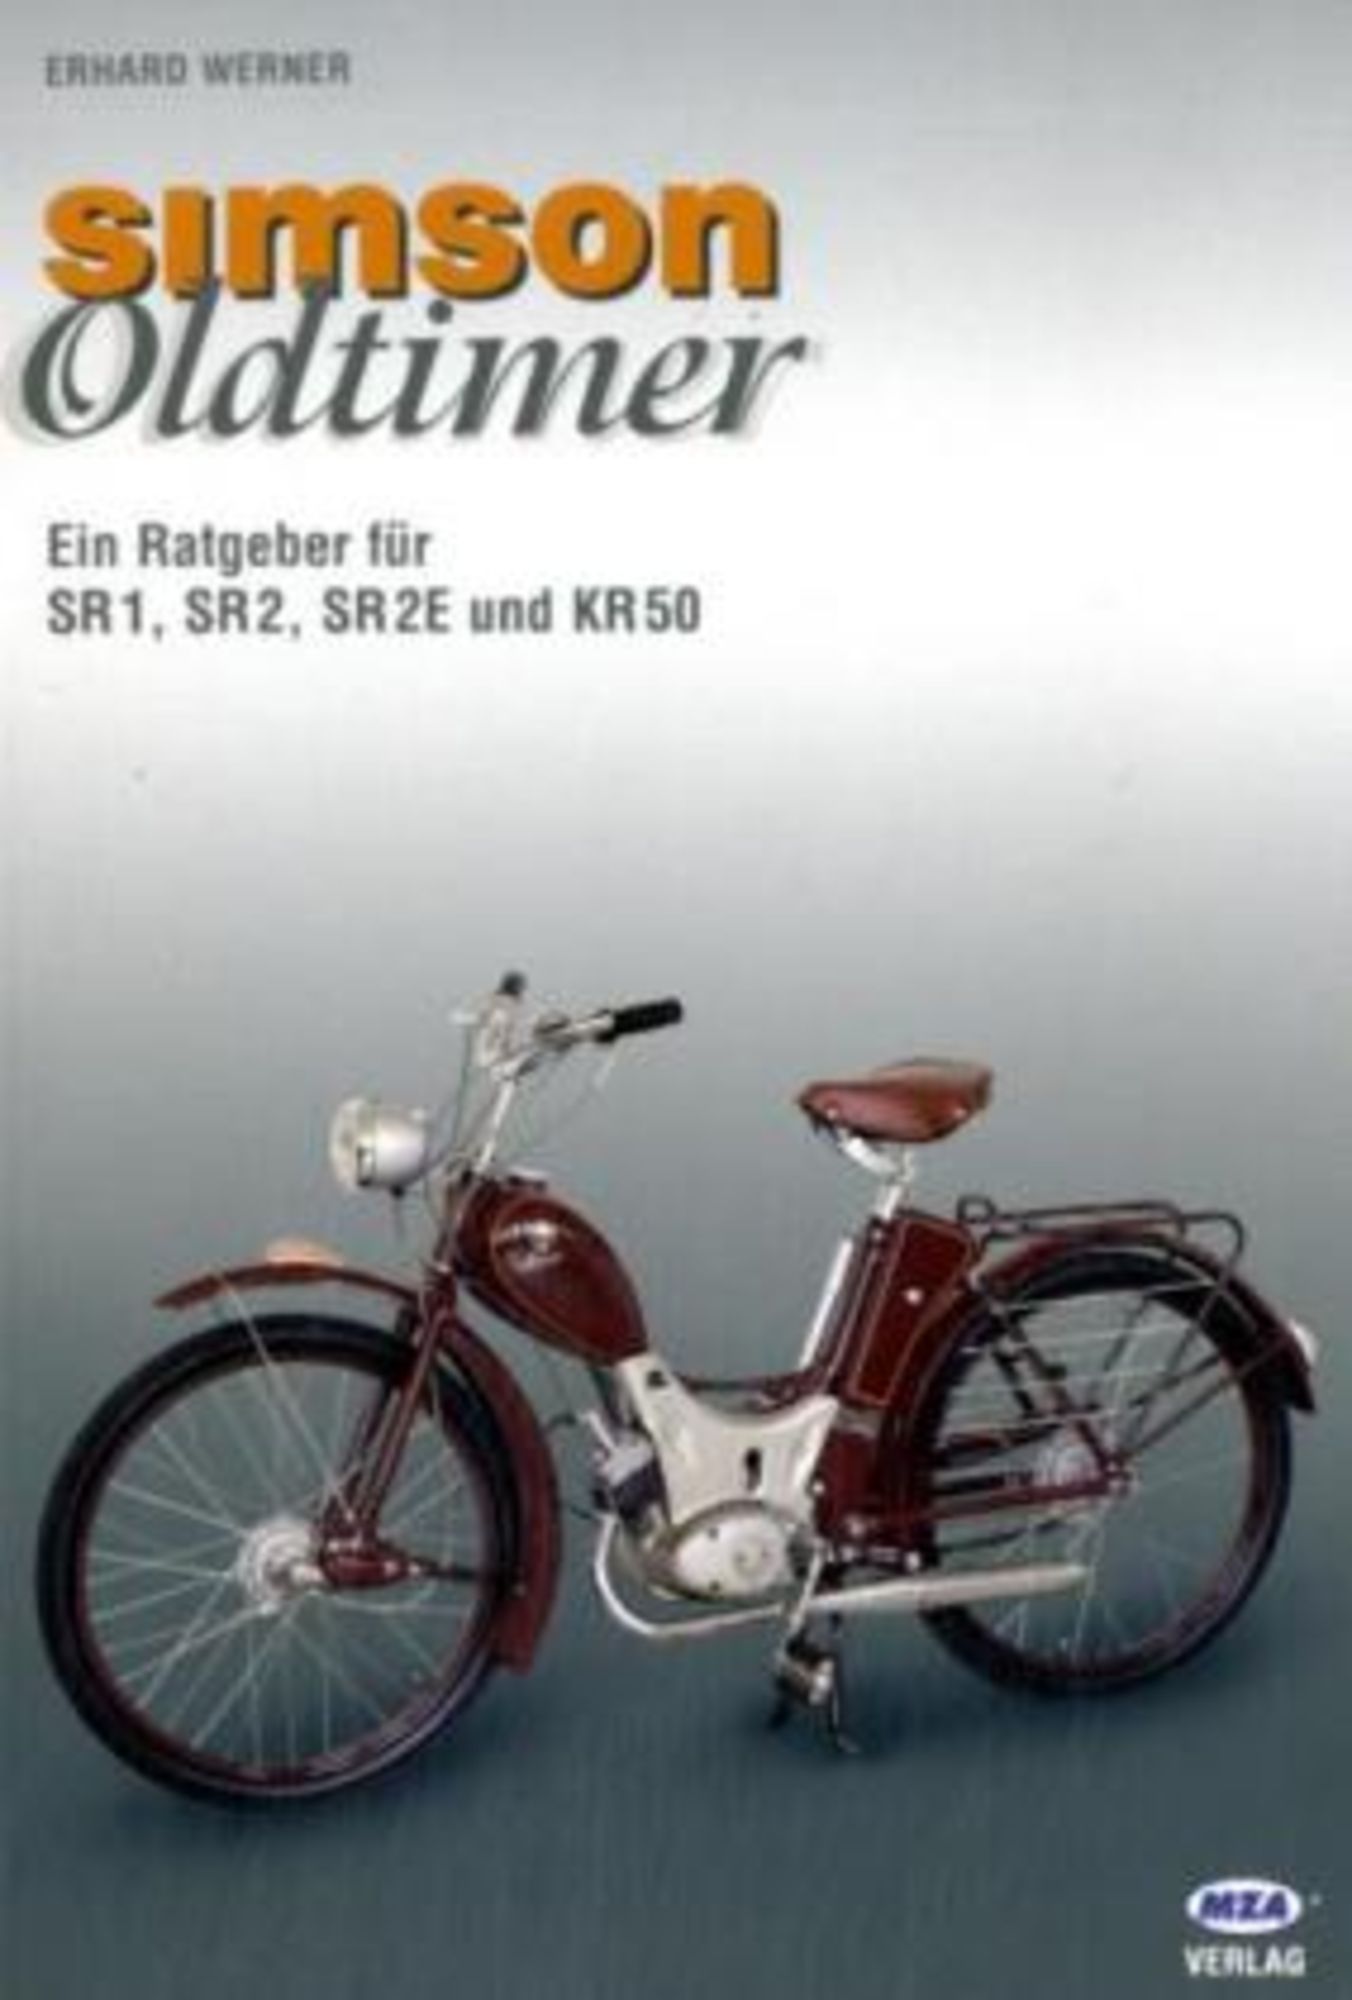 Simson - Oldtimer' von 'Erhard Werner' - Buch - '978-3-9809481-3-5